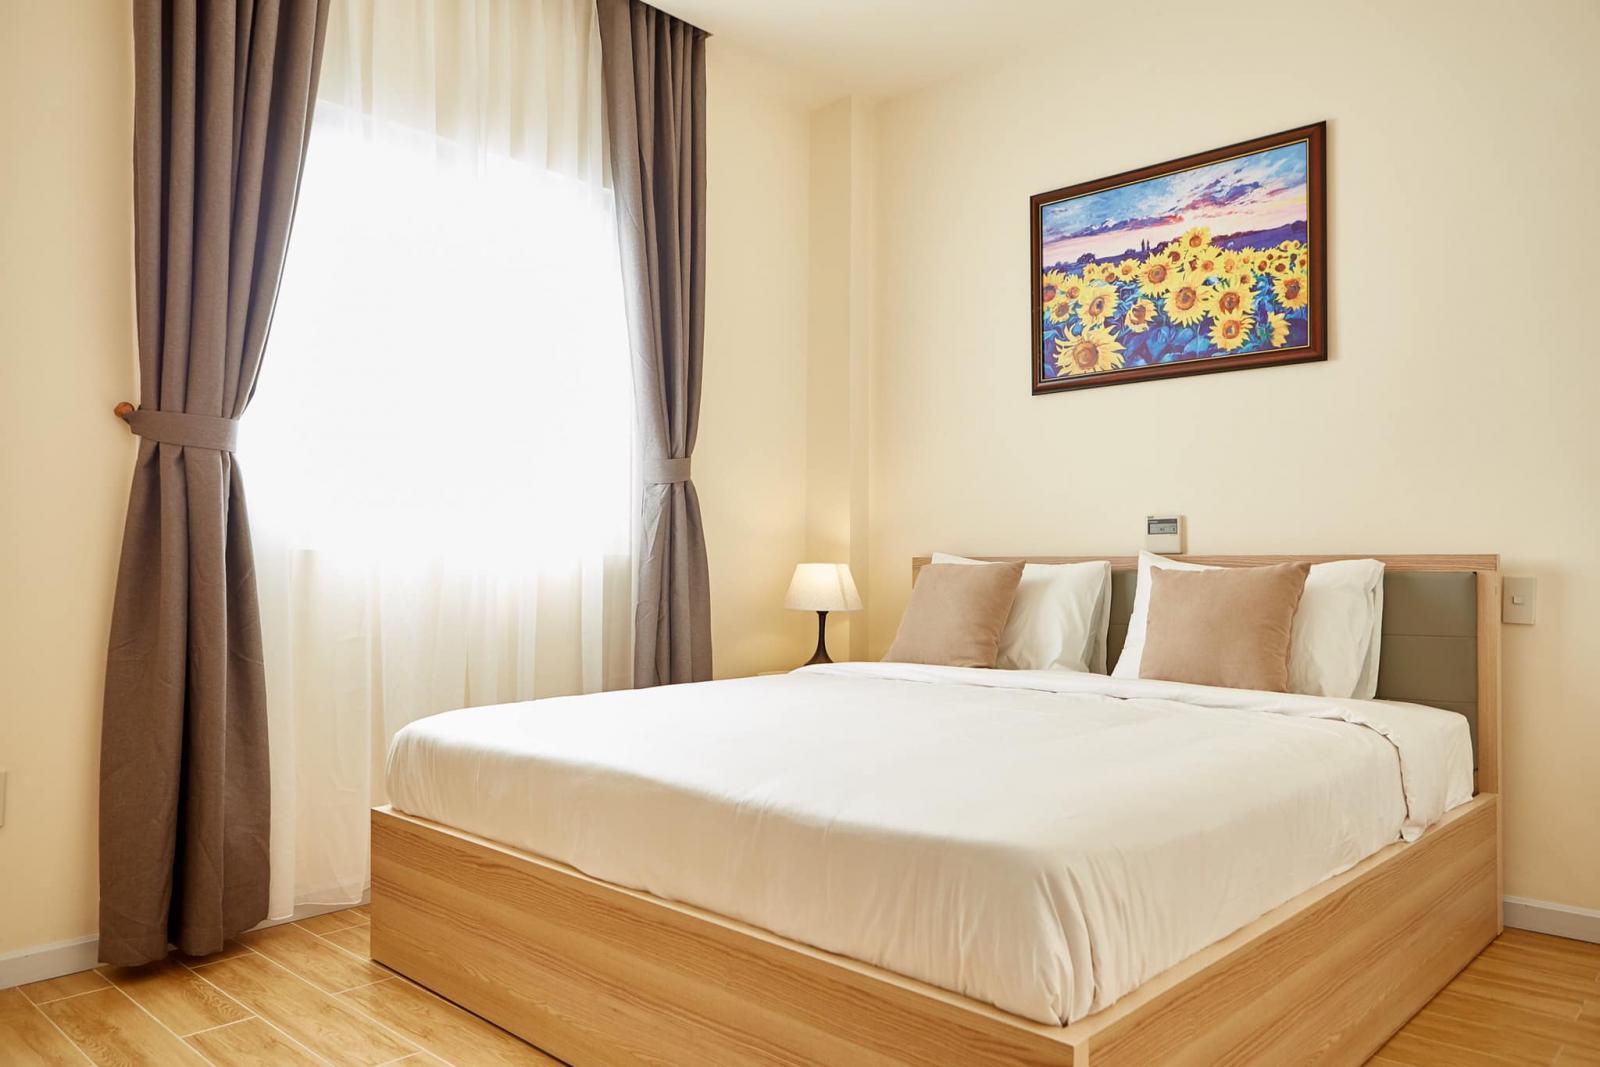 Cho thuê căn hộ dịch vụ 1 phòng ngủ riêng biệt 50m2 tiện nghi y hình MT Đồng Nai 12 Triệu Tel 0942.811.343 Tony (Zalo/Phone)